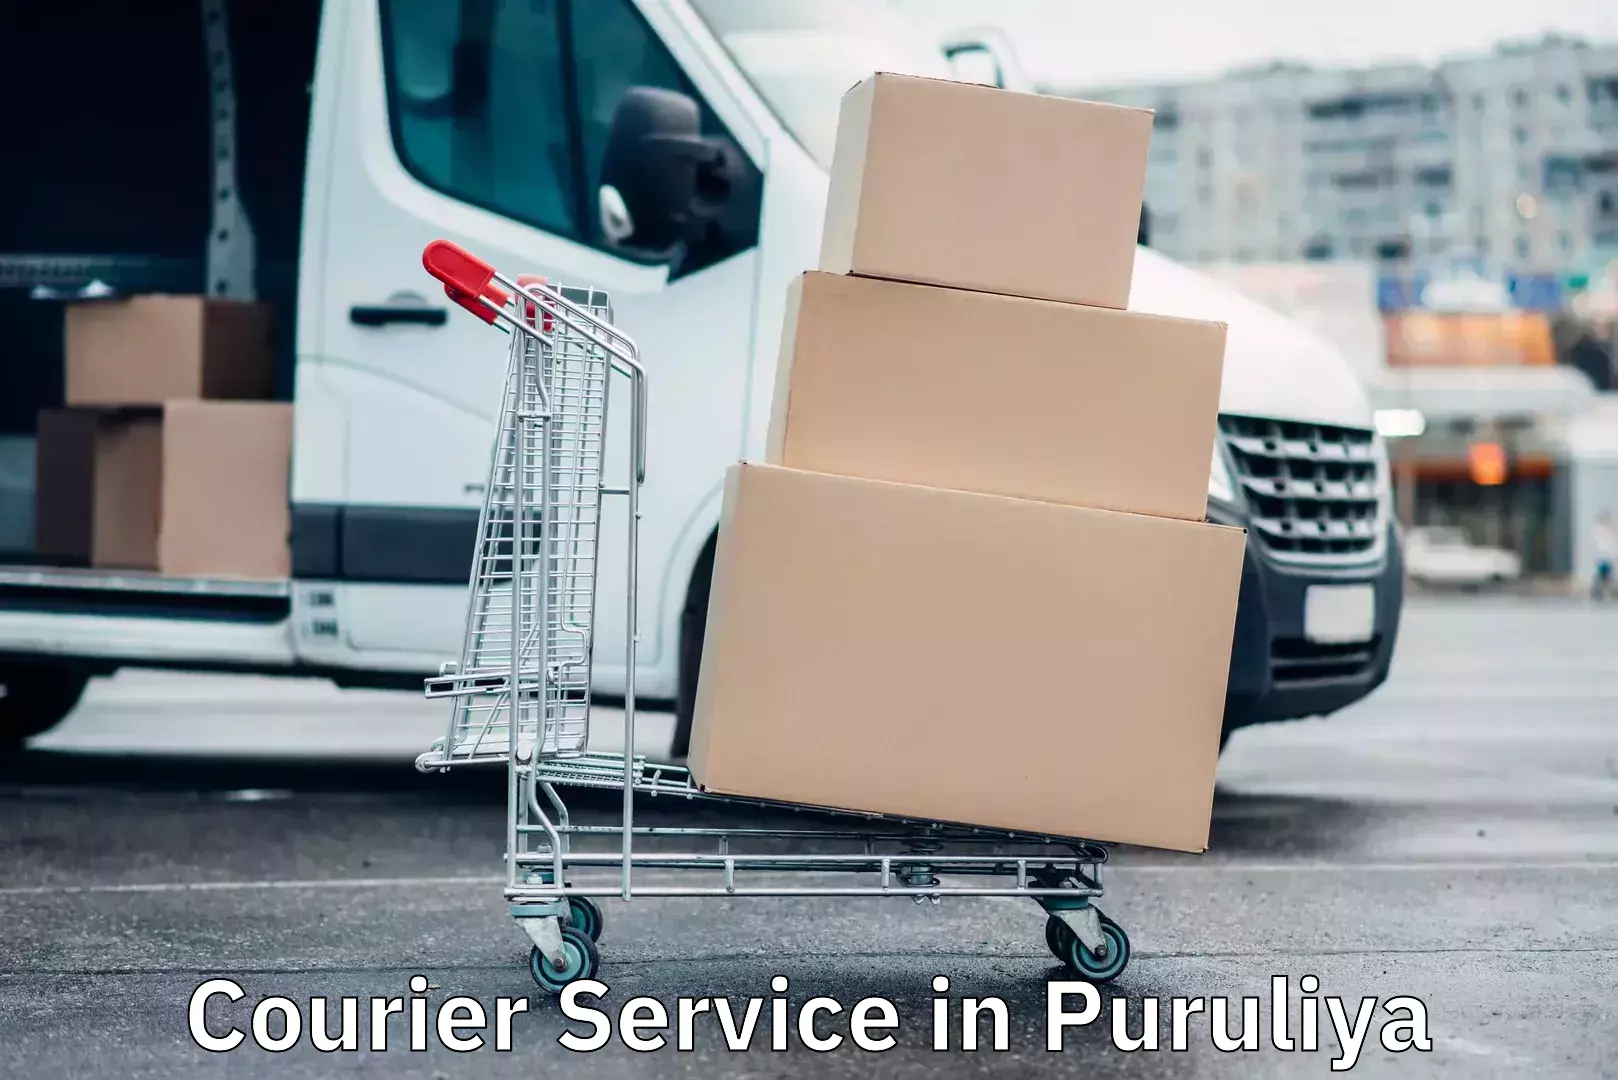 High value parcel delivery in Puruliya